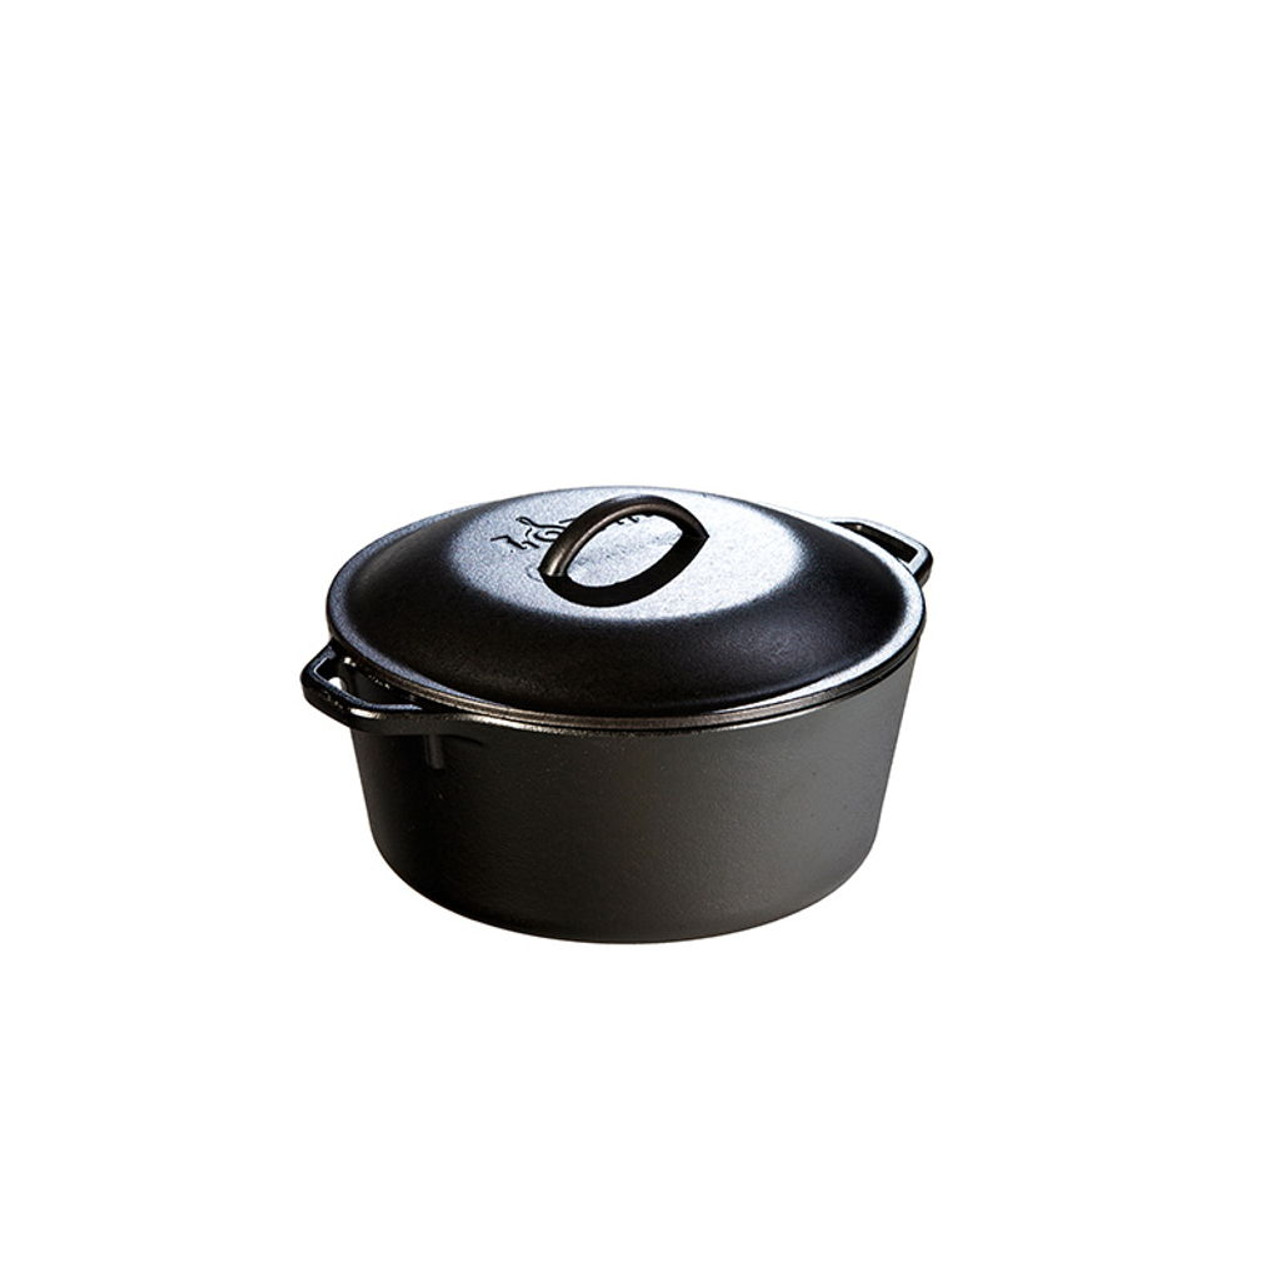 World Cuisine Cast Iron Rectangular Dutch Oven 5 Black A17535b